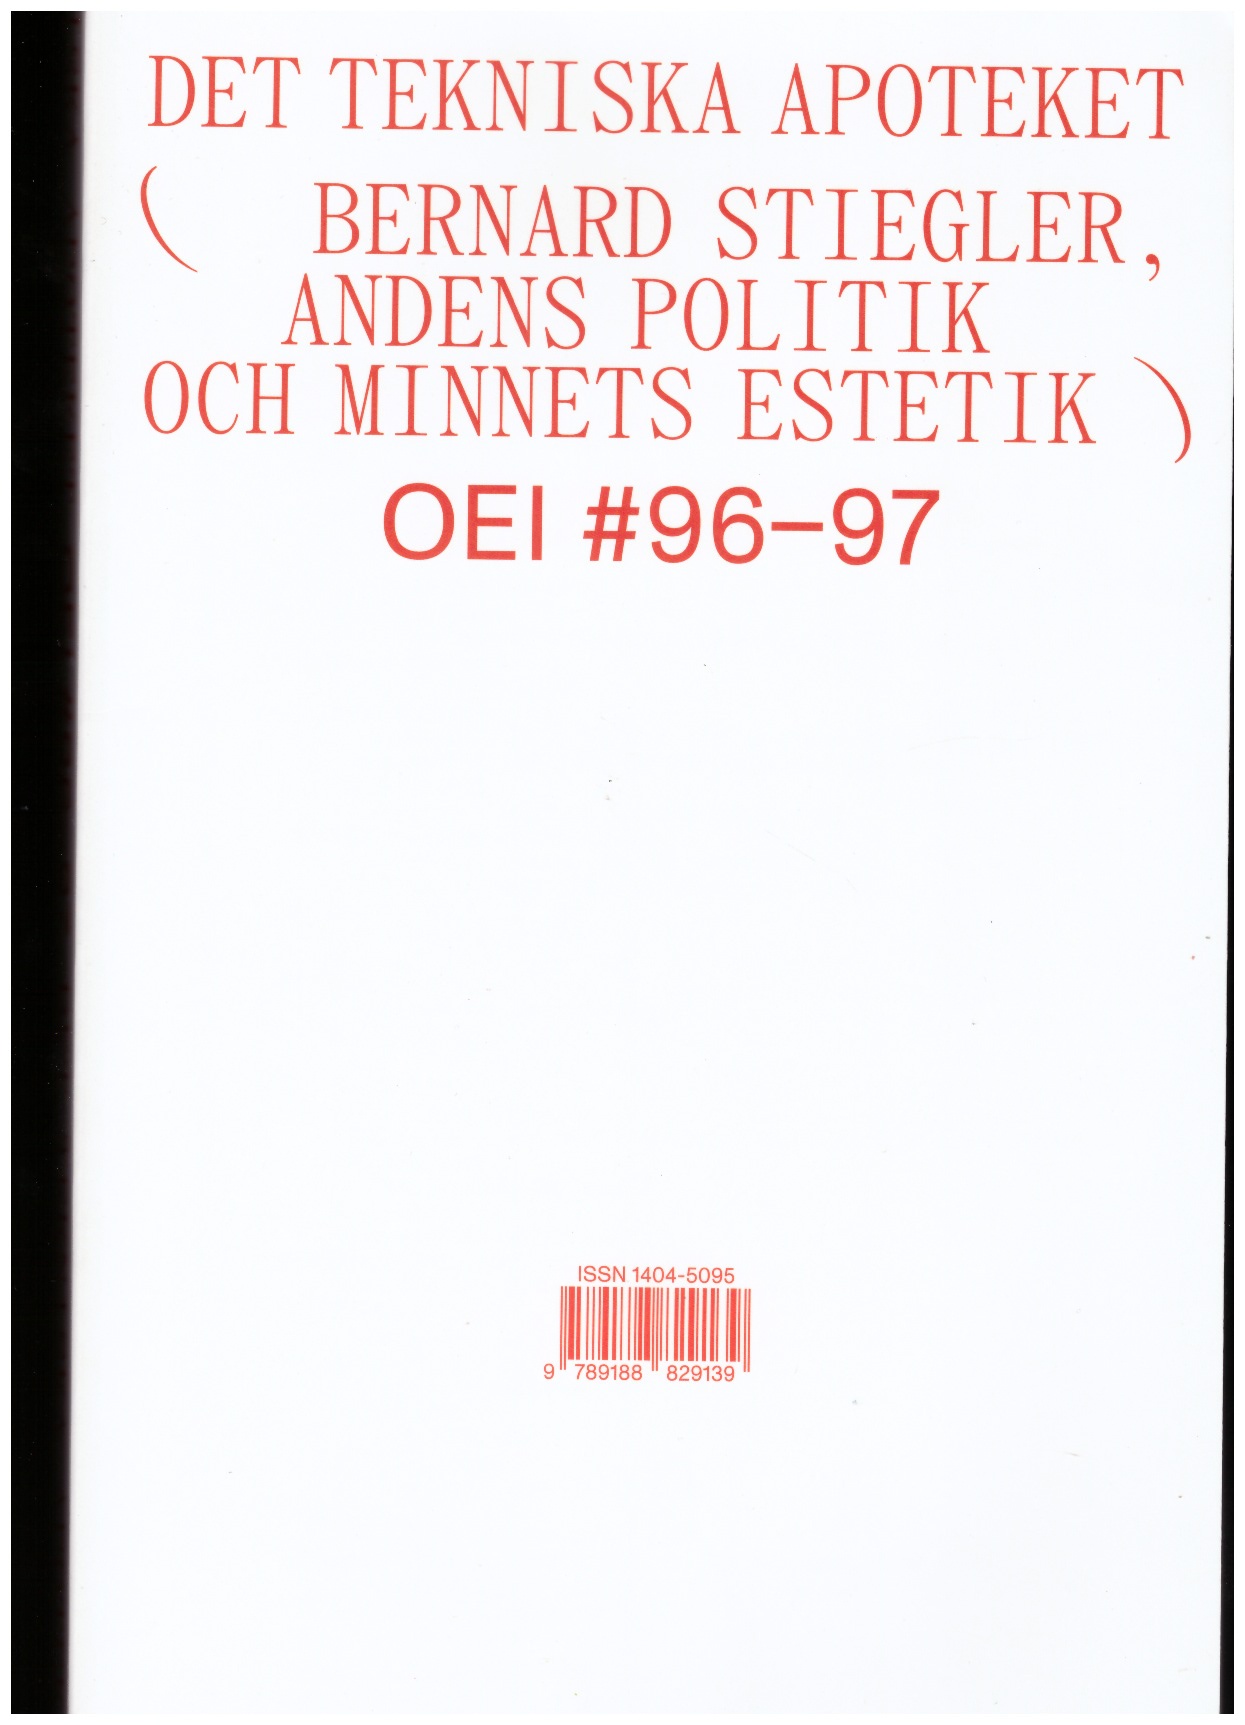  ANDERSSON, Axel; ESPINOZA, Tania (eds.) - OEI #96–97: Det tekniska apoteket (Bernard Stiegler, andens politik och minnets estetik)